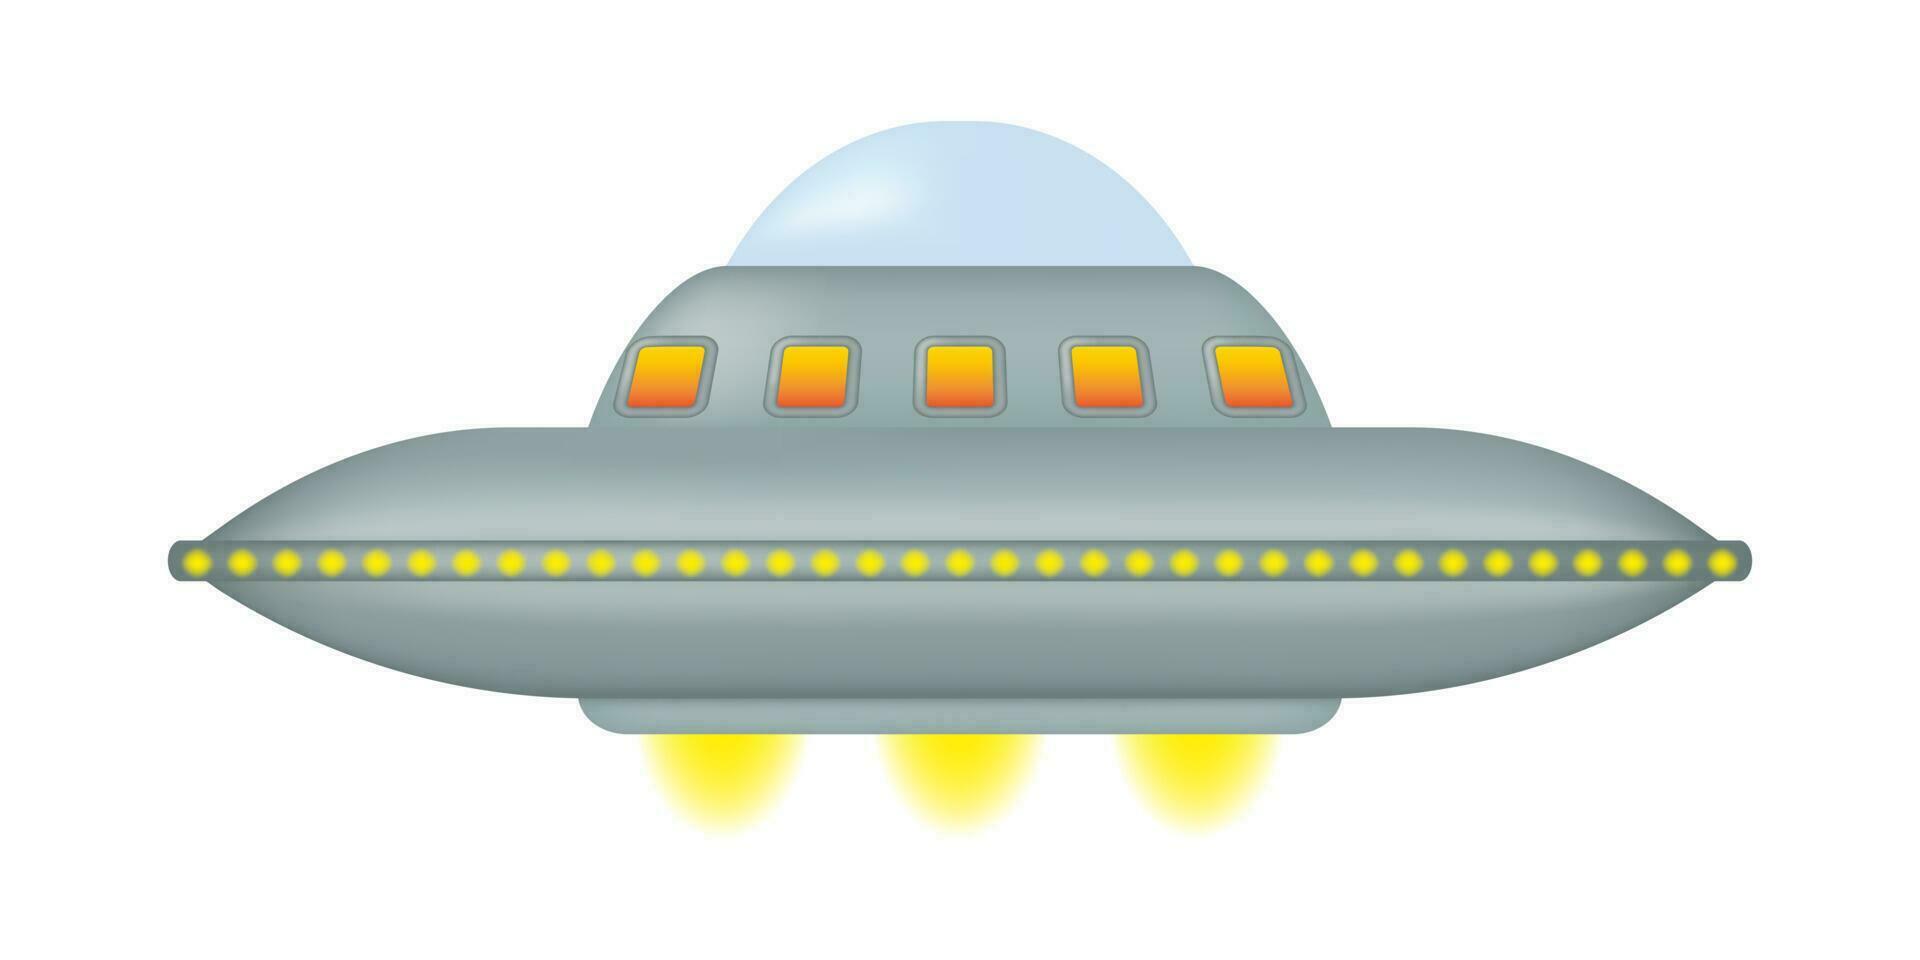 un isolato volante piattino con un' serie di giallo luci circostante suo il giro metallo corpo. fantastico alieno navicella spaziale. ufo giorno. vettore illustrazione.